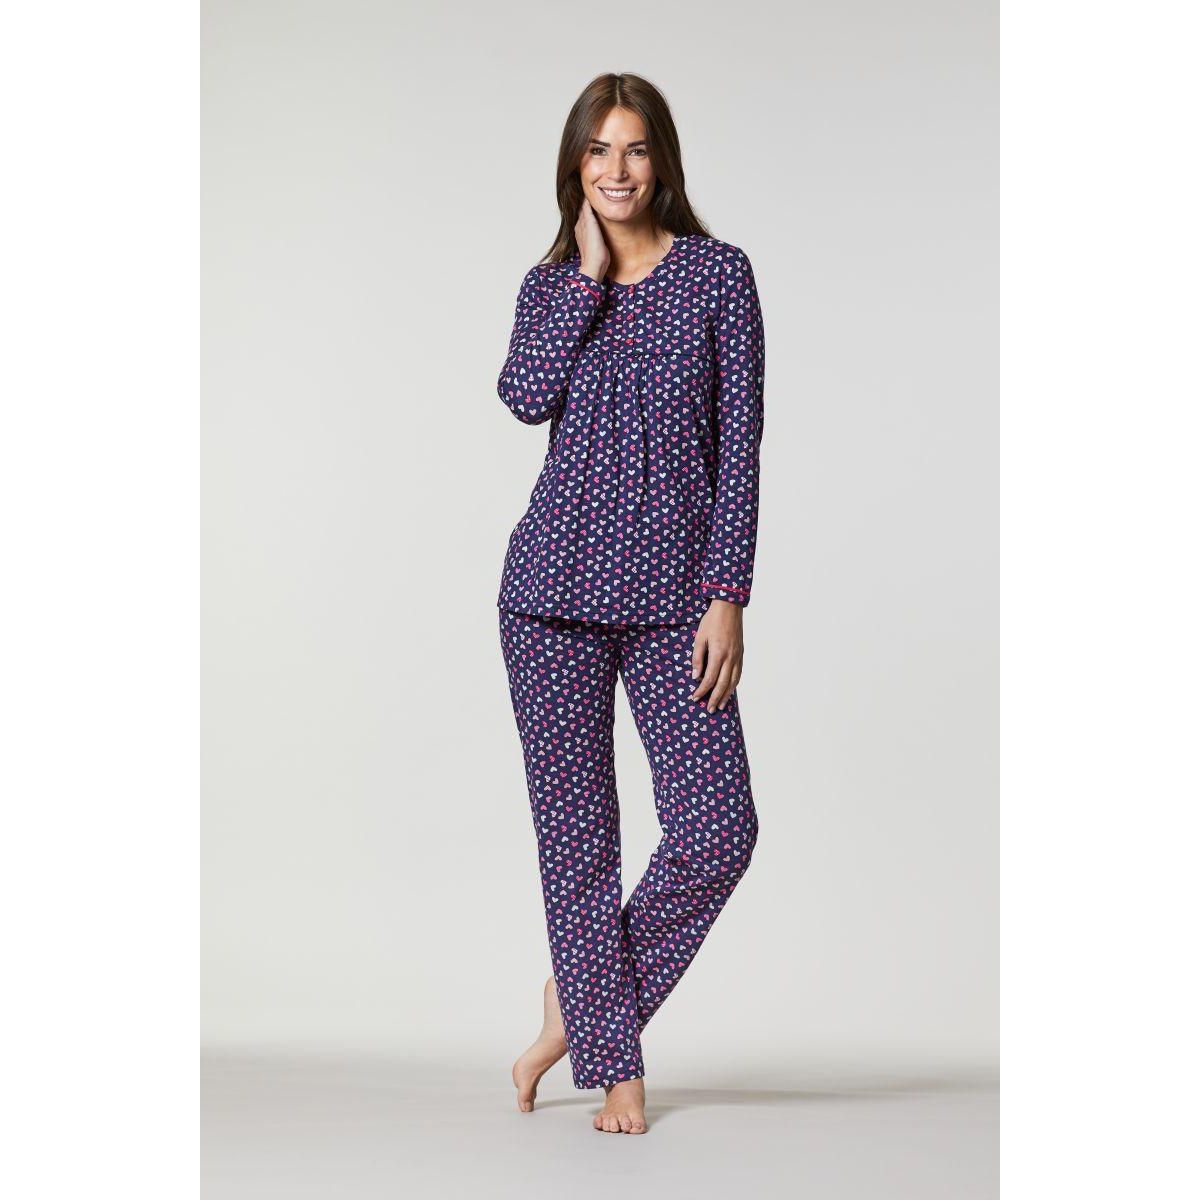 Ringella dames pyjama hartjes | verzending Pyjama-webshop | Online de mooiste pyjama's, nachthemden, ondermode meer